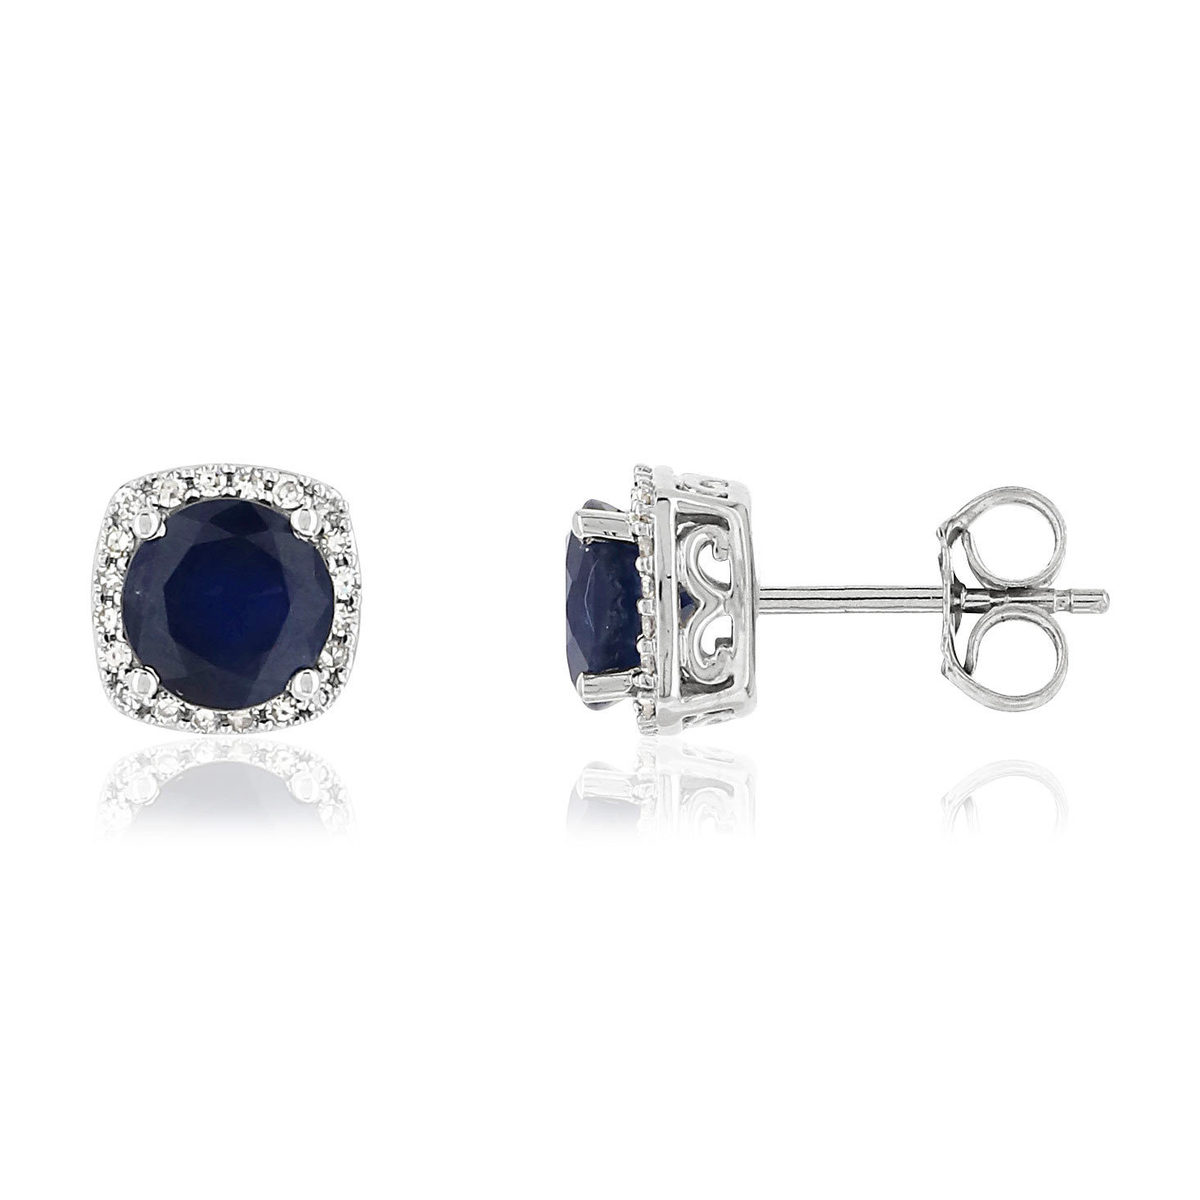 Boucles d'oreilles MATY Or 750 blanc Saphirs bleus et Diamants